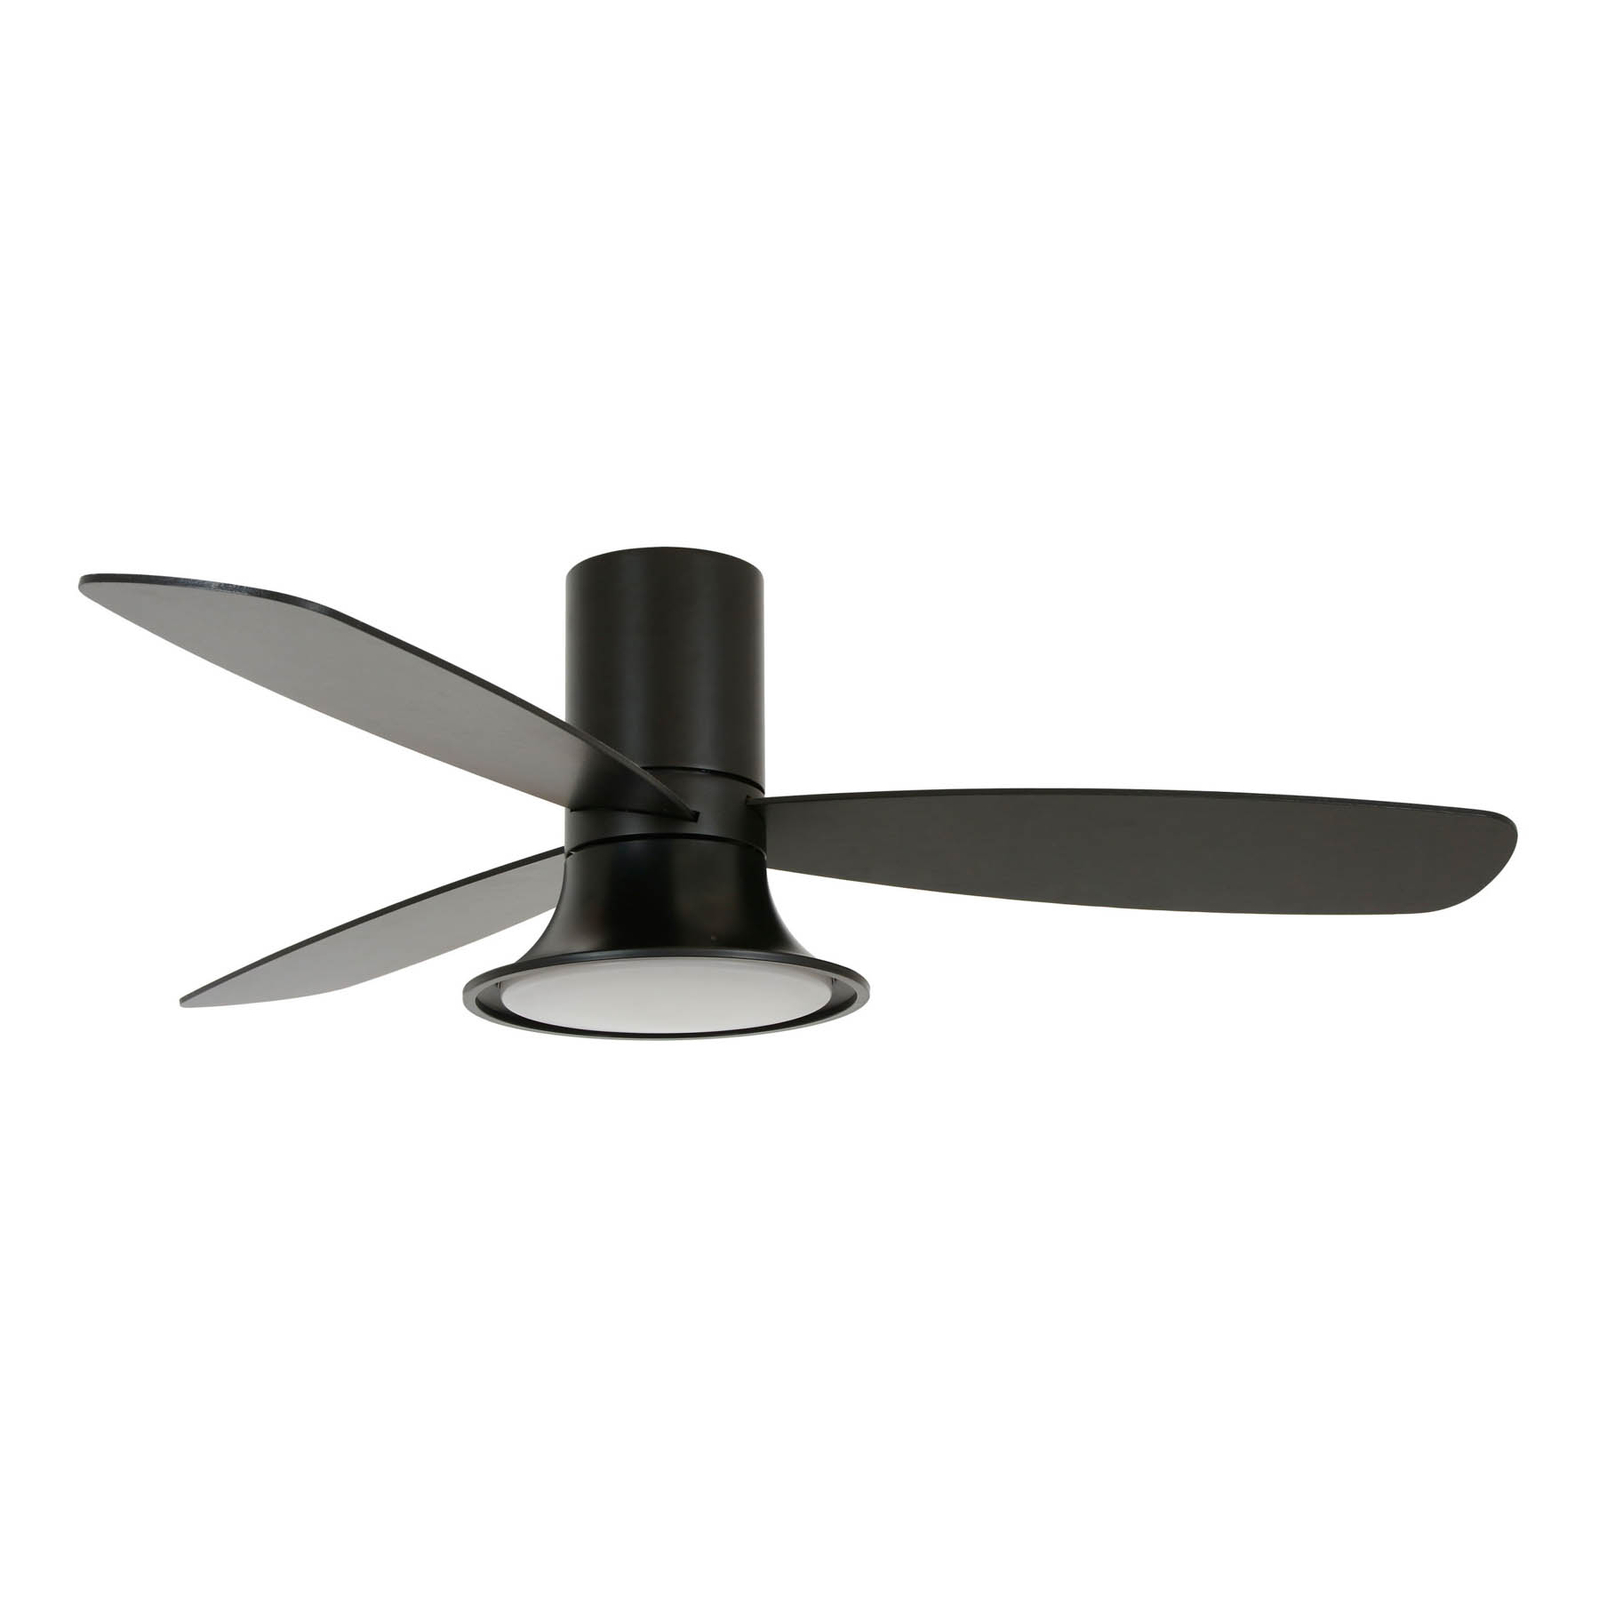 Beacon ceiling fan with light Flusso black 132cm quiet